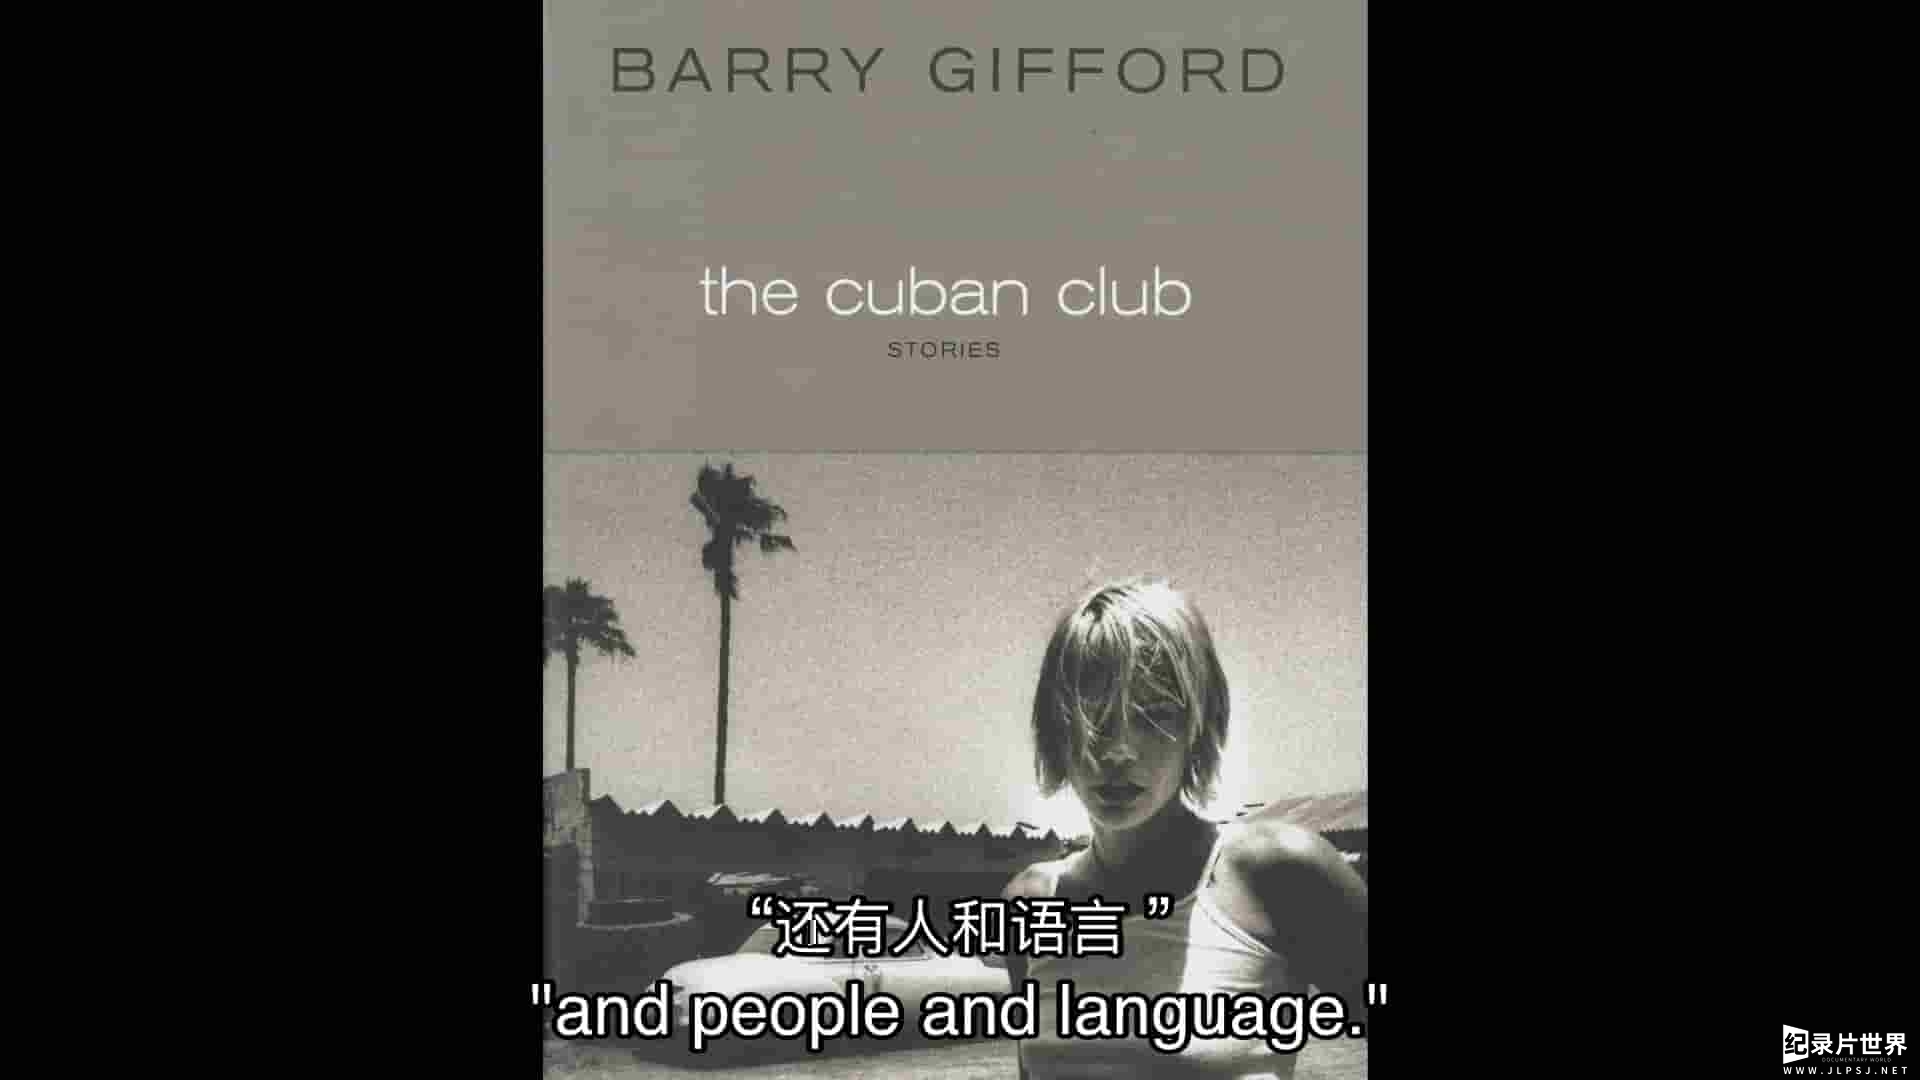 美国纪录片《罗伊的世界：巴里·吉福德的芝加哥 Roy's World: Barry Gifford's Chicago 2020》全1集